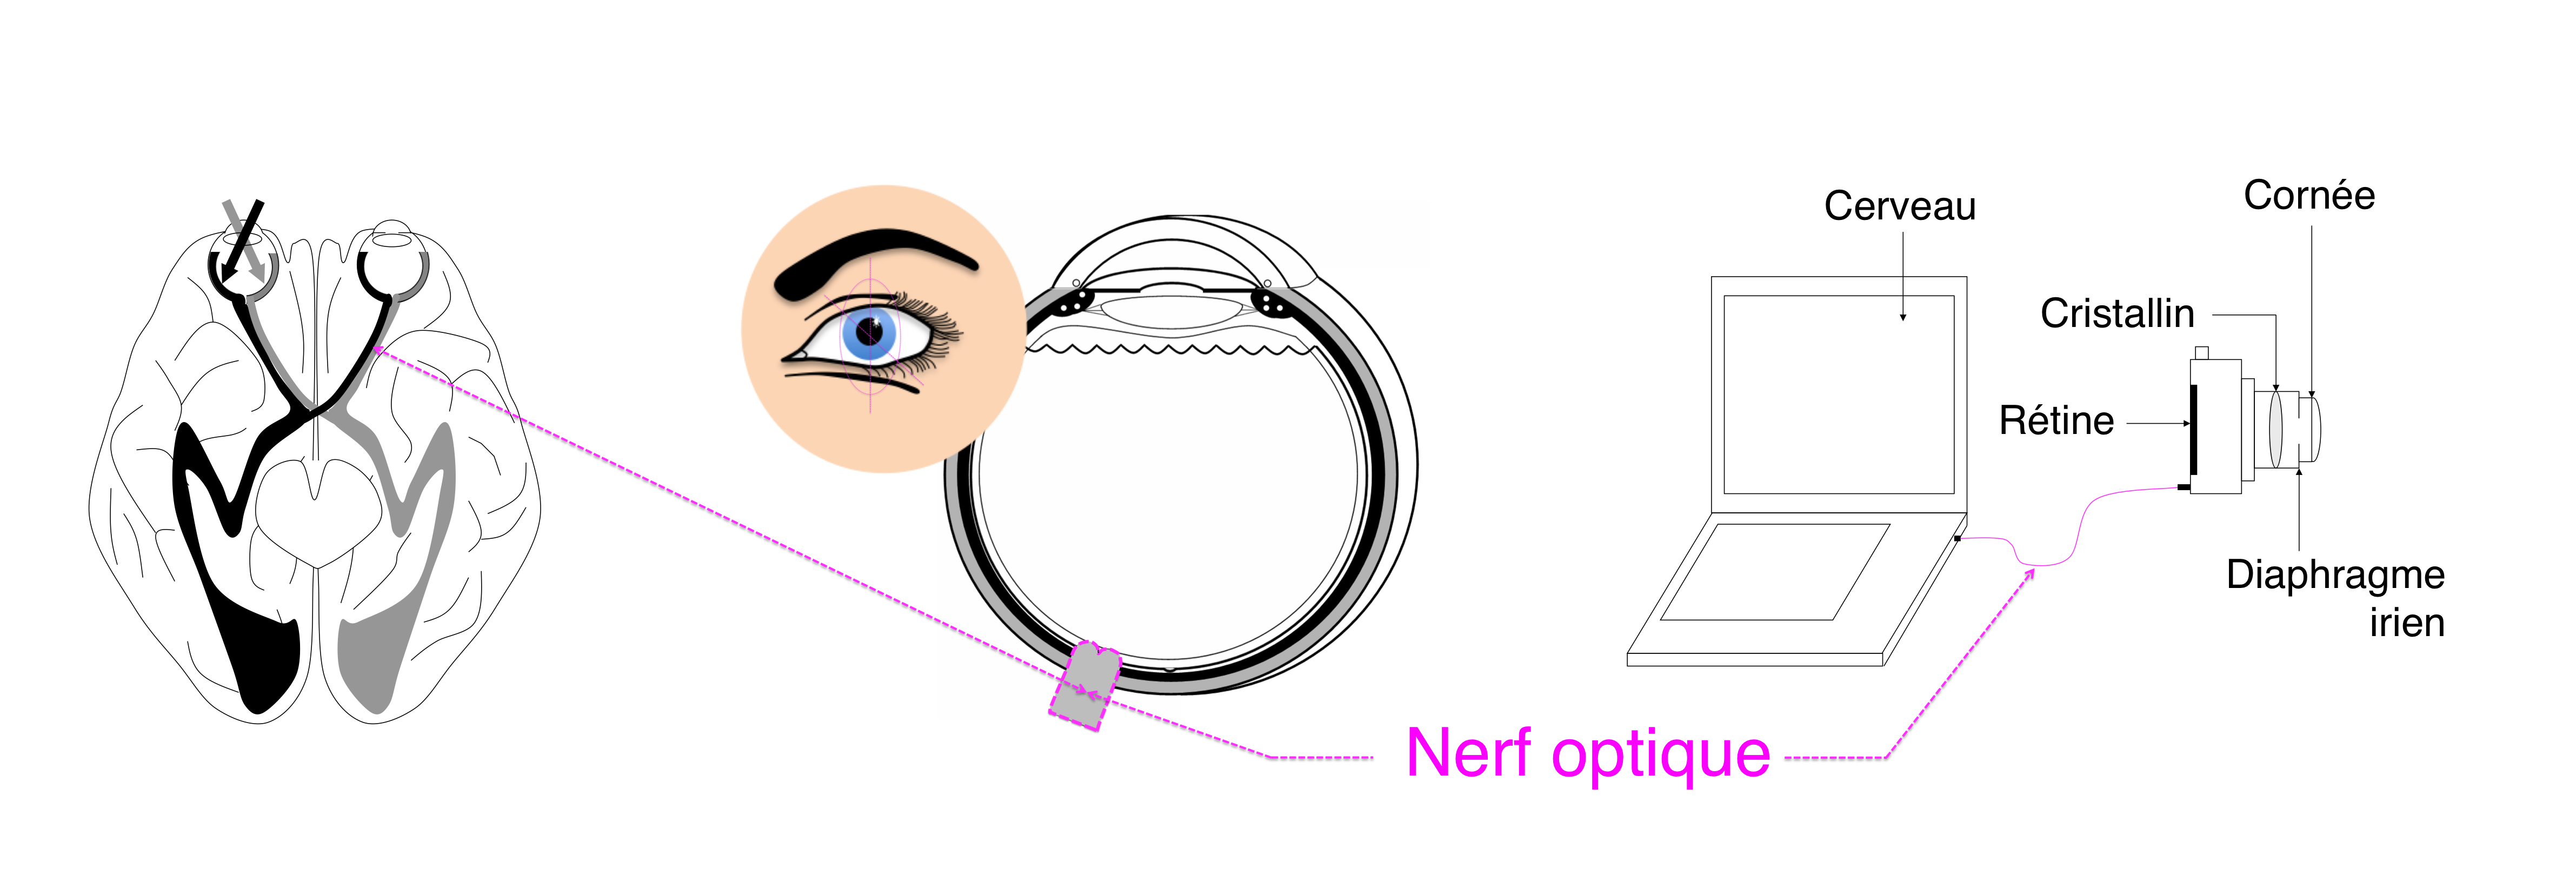 le nerf optique relie l'oeil au cerveau afin d'y transferer le meessage visuel